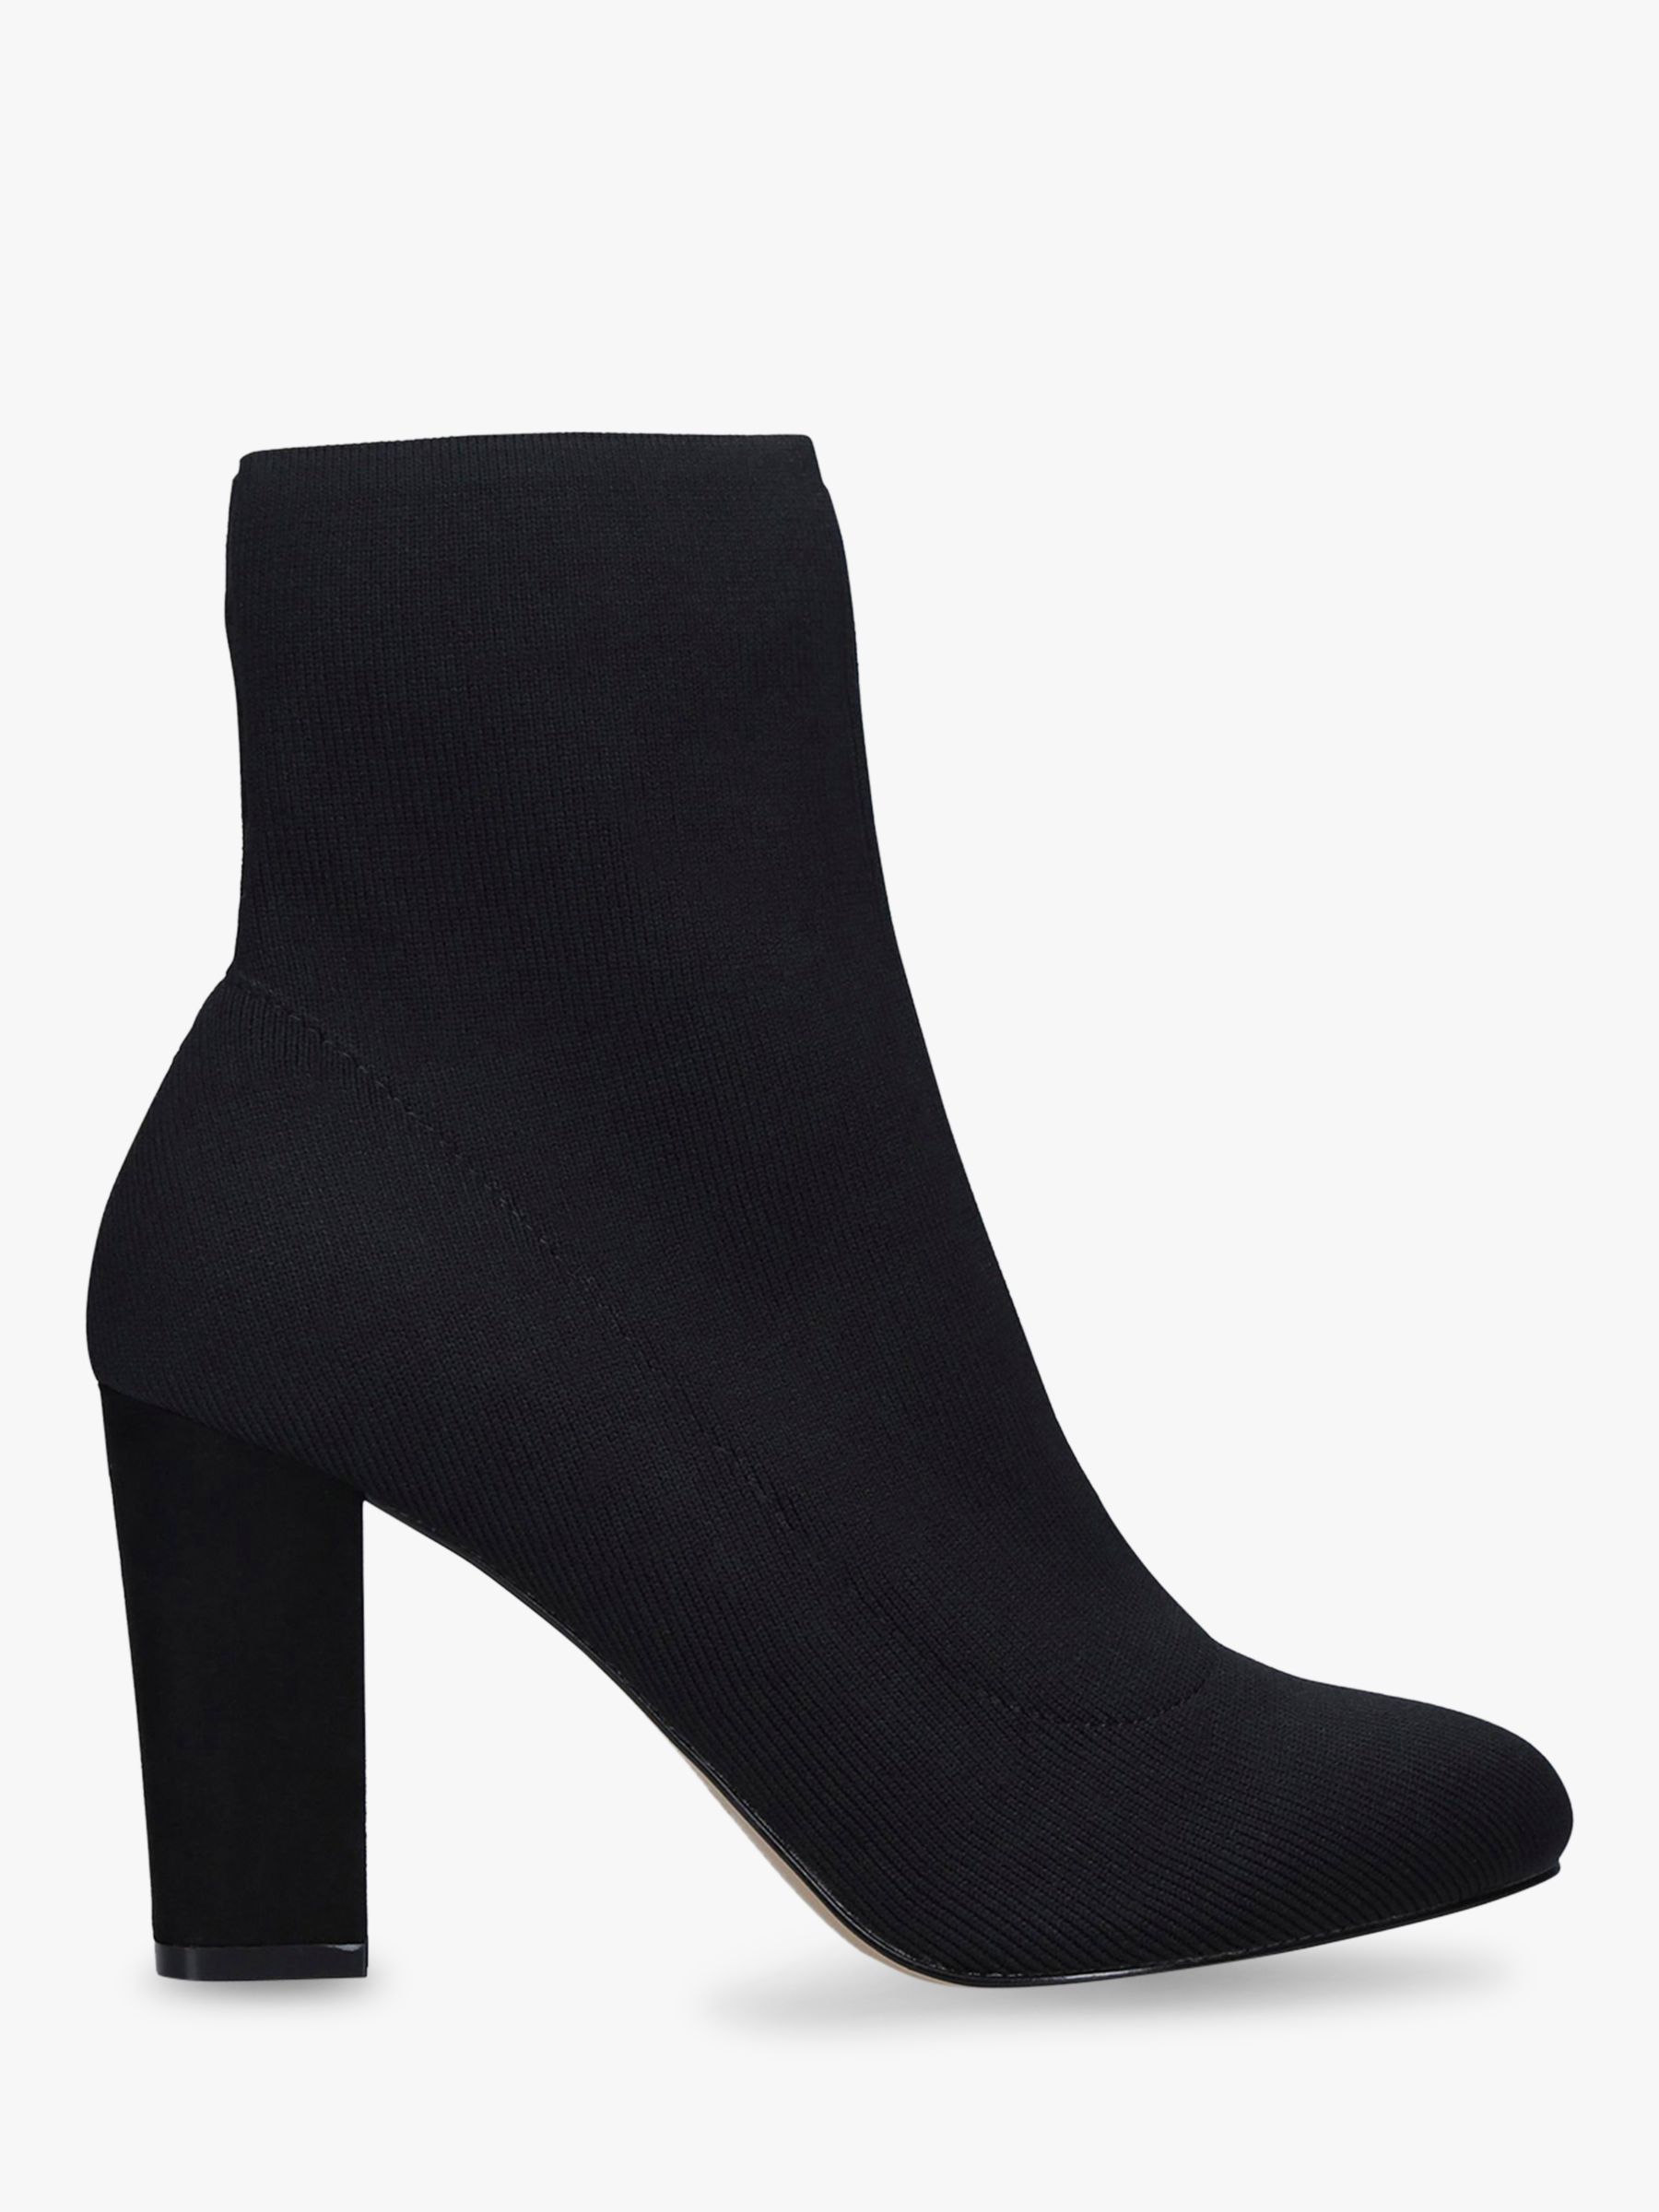 black ankle boot heels